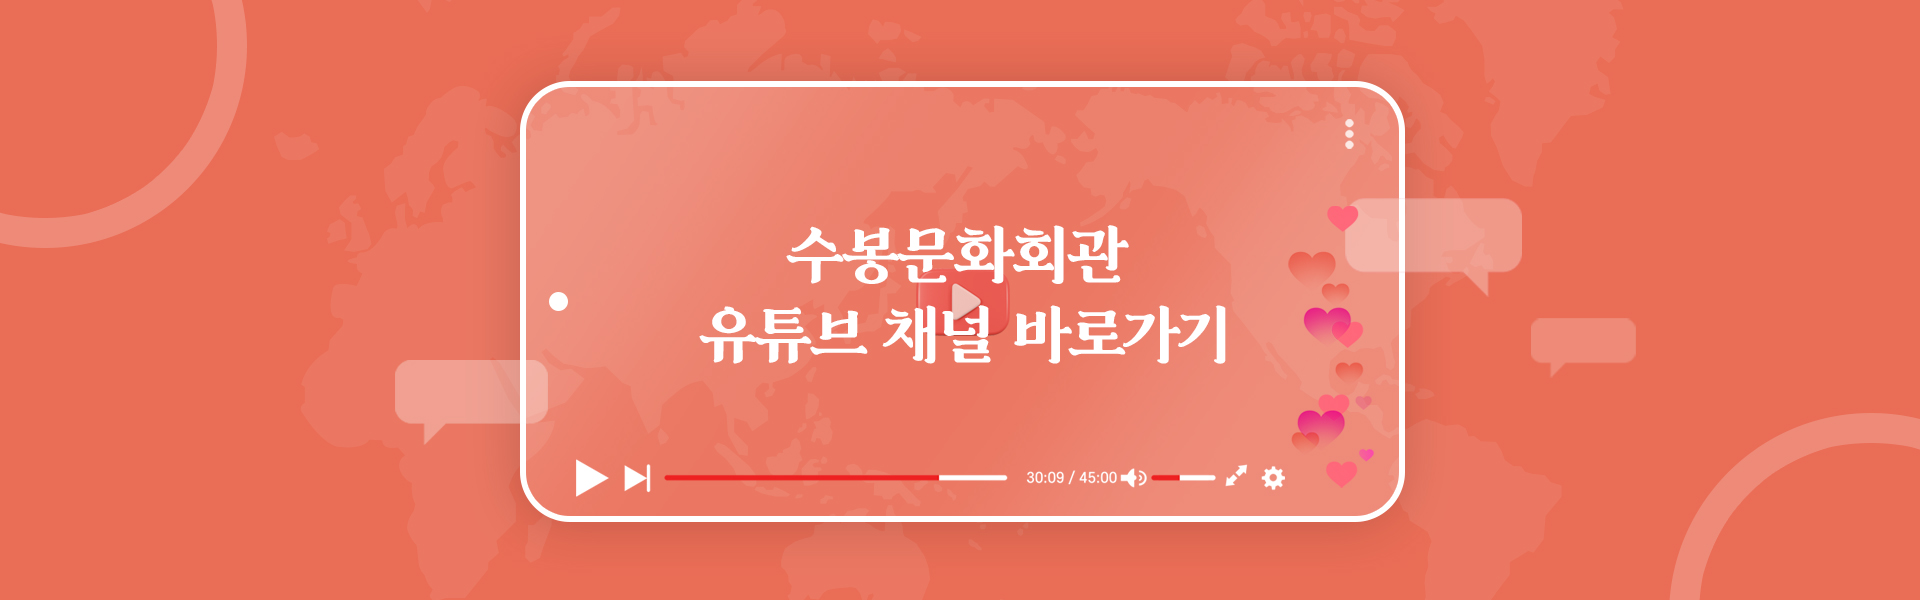 수봉문화회관 - YouTube 